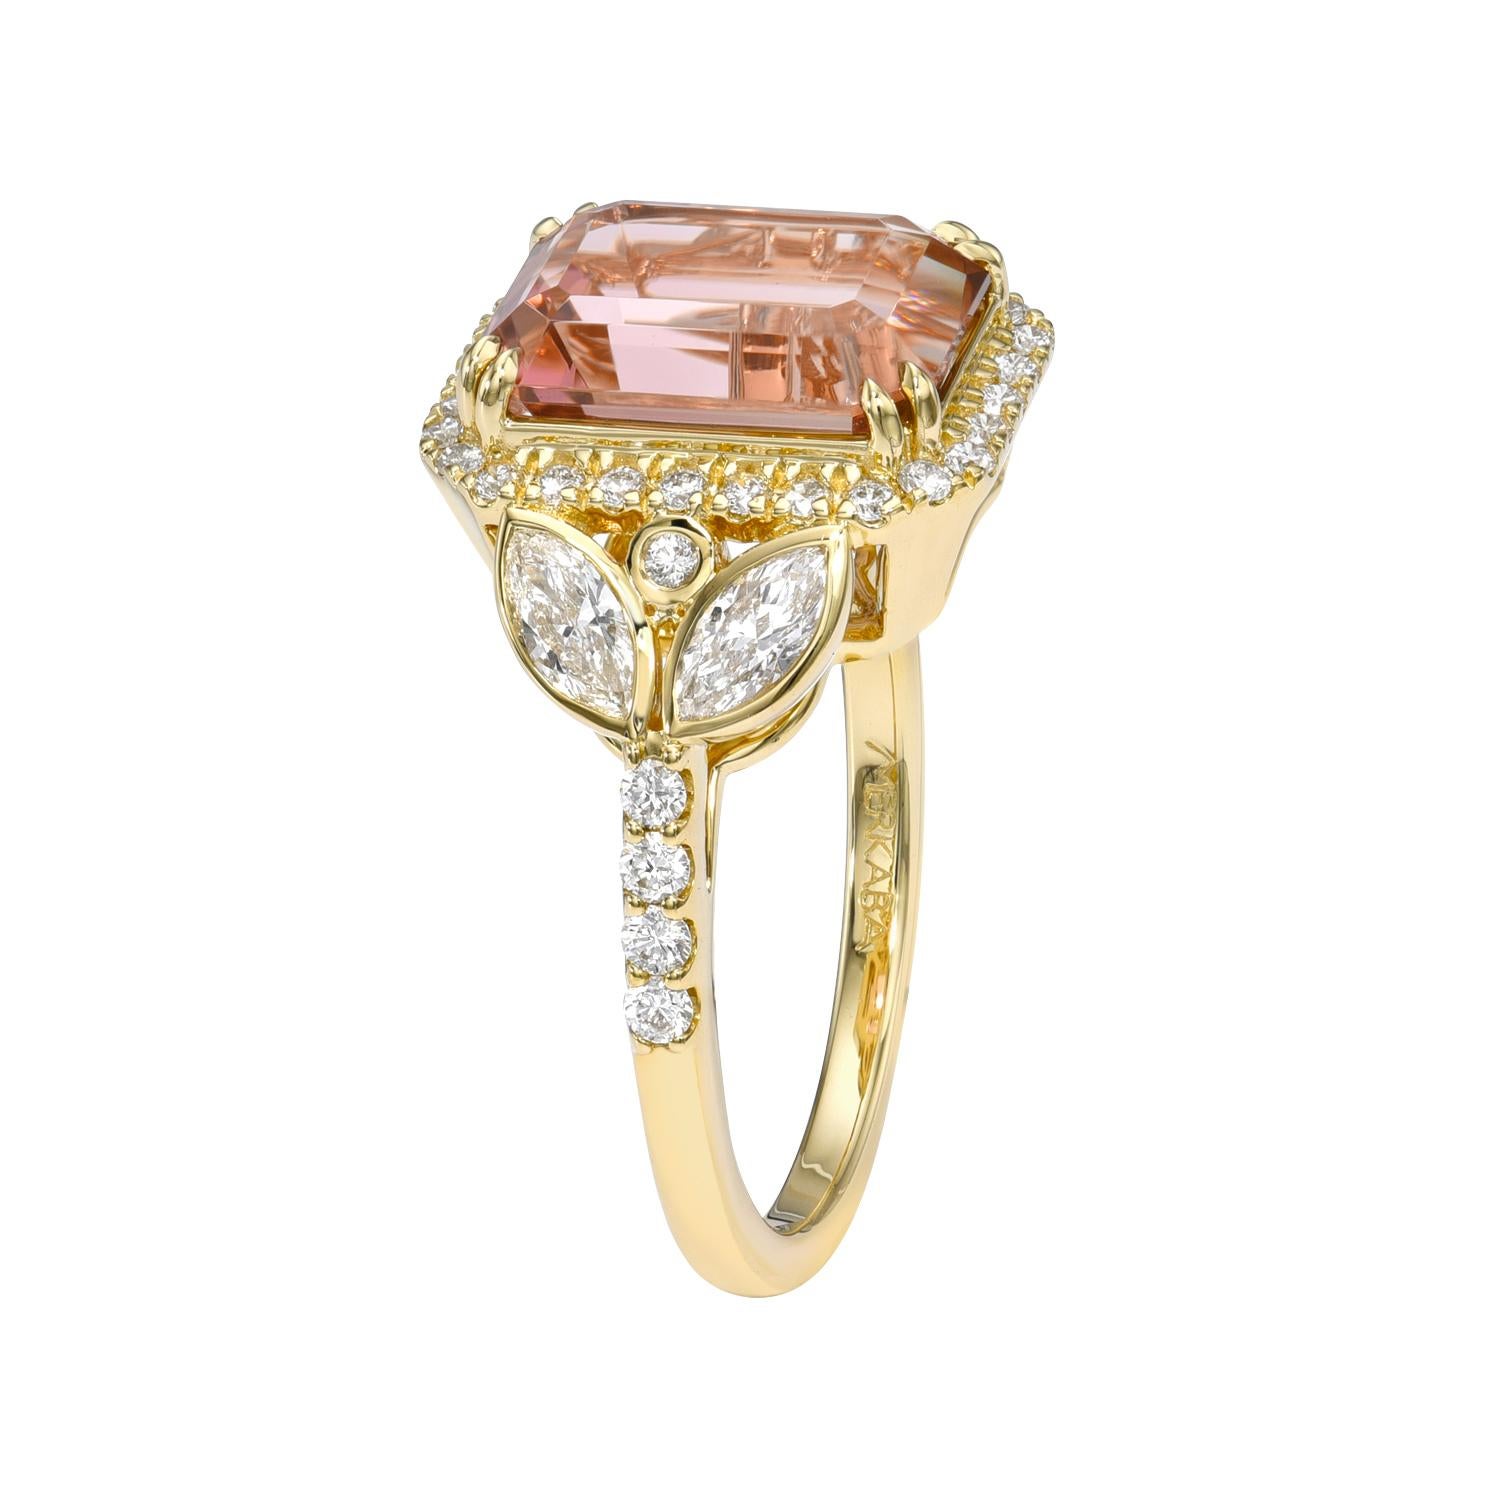 Feiner Ring aus 18 Karat Gelbgold mit 4,68 Karat rosa Turmalin im Smaragdschliff, verziert mit insgesamt 0,52 Karat Marquise-Diamanten und 0,38 Karat runden Brillanten.
Ring Größe 6,5. Eine Größenänderung ist auf Anfrage möglich.
Rücksendungen